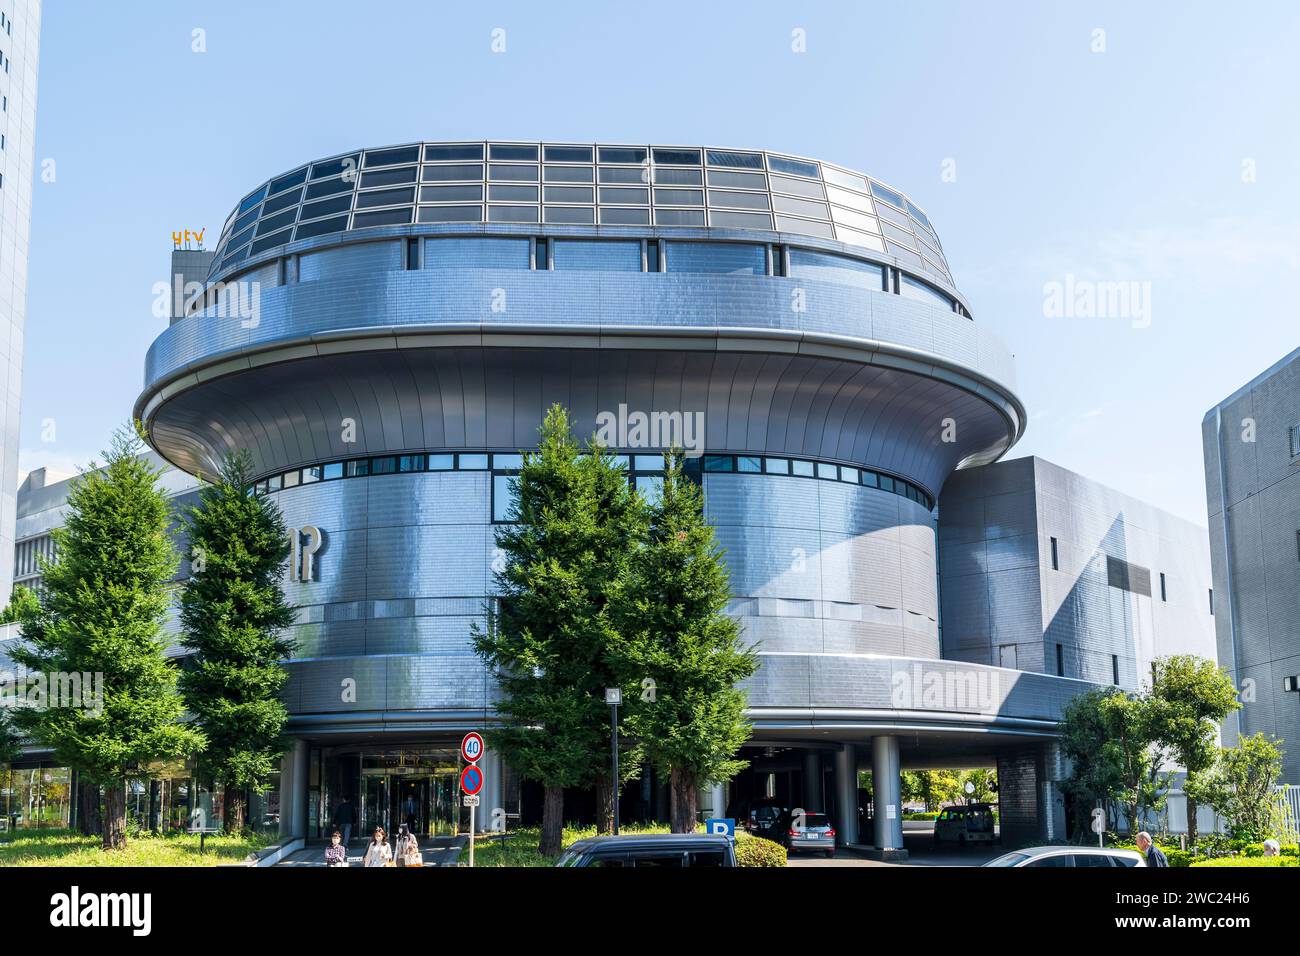 Vista della strada dell'International Market Place, centro commerciale, all'Osaka Business Park, OBP. Primavera, giorno di sole, cielo blu. Architettura moderna. Foto Stock